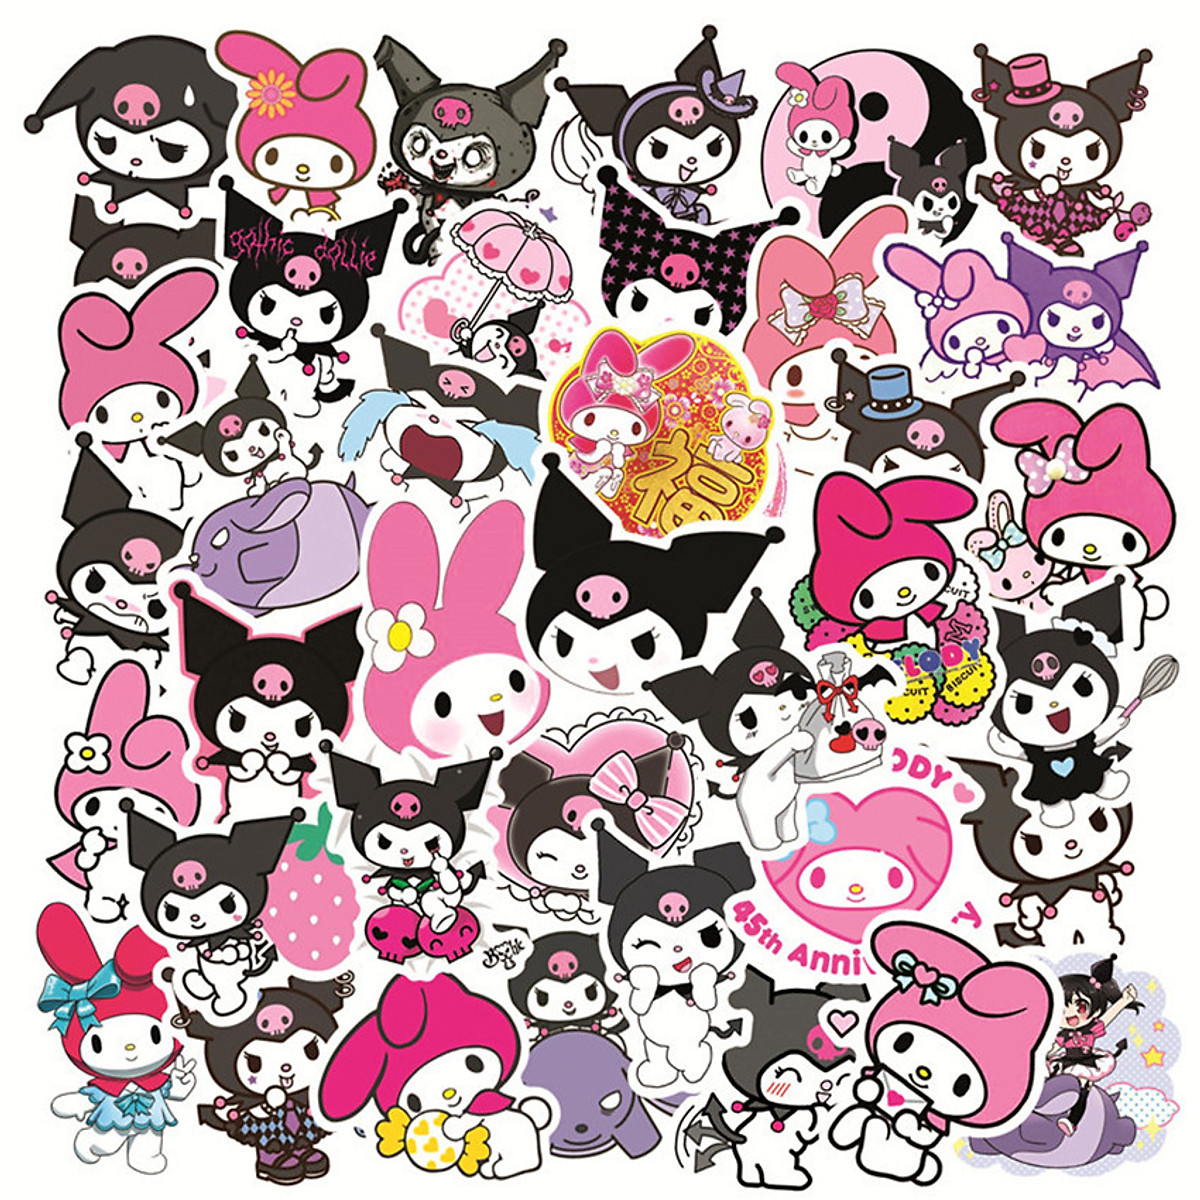 Kuromi, My Melody và những chiếc Stickers đáng yêu sẽ làm bạn say đắm ngay từ cái nhìn đầu tiên. Với sự kết hợp tài tình của hai nhân vật, bộ sưu tập stickers này sẽ giúp bạn truyền tải cảm xúc một cách tuyệt vời trên những cuộc trò chuyện của mình.